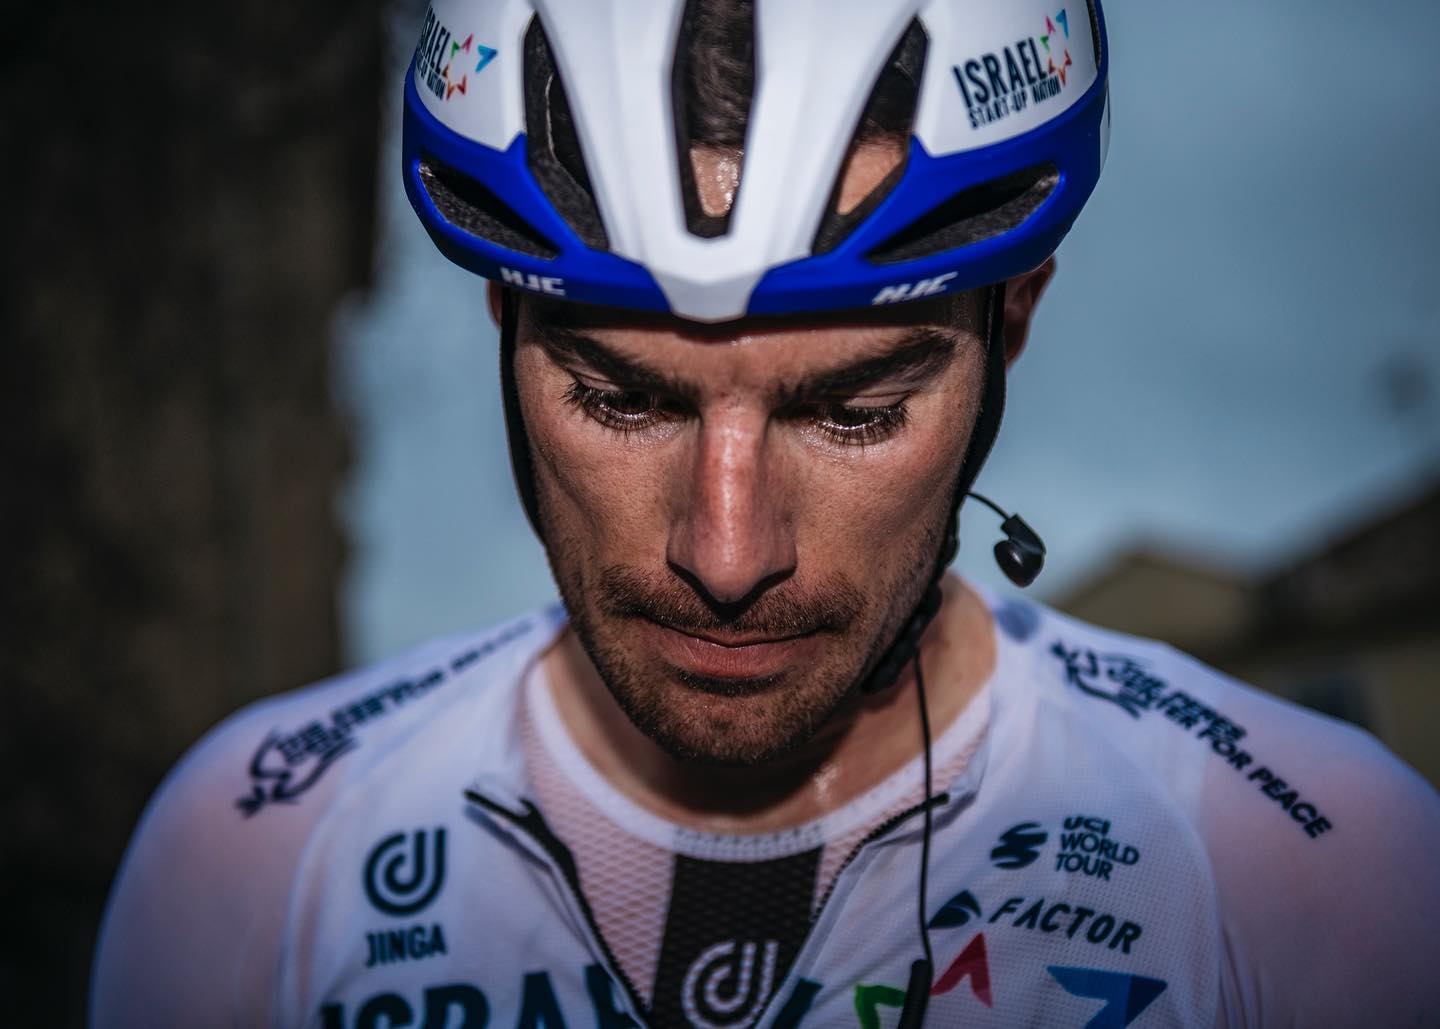 Étoile de Bessèges Stage 2 Race Report: Rudy just misses out on podium